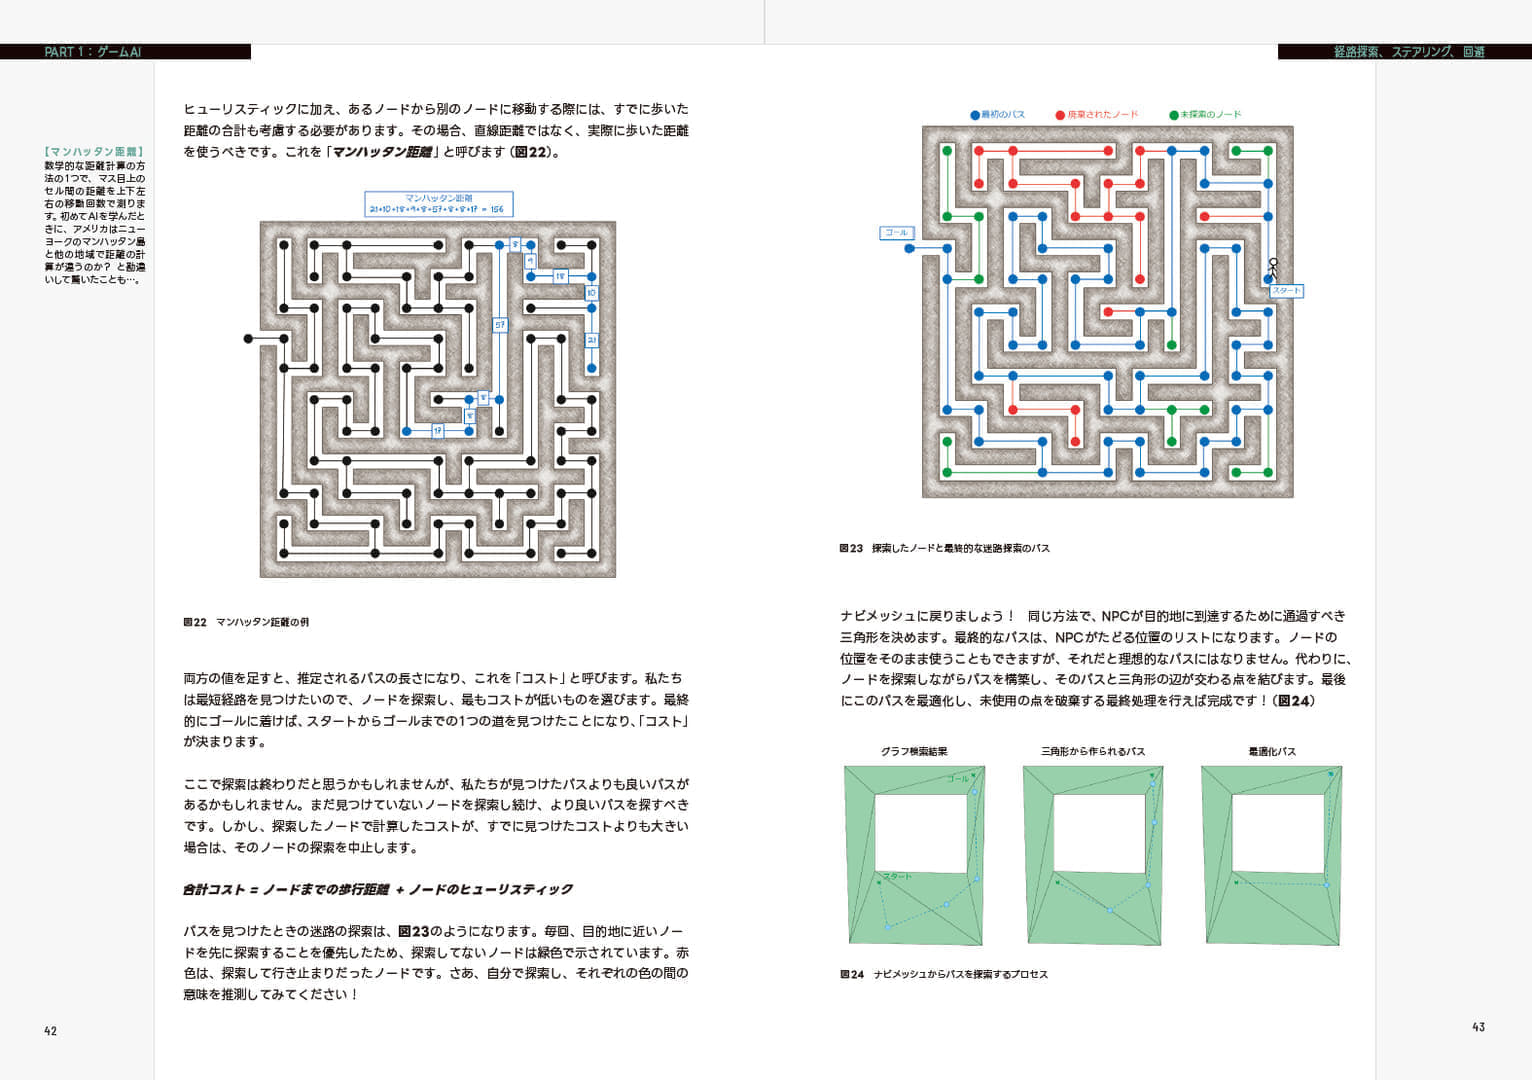 書籍『スクウェア・エニックスのAI』が発売開始。「日本でもっともわかりやすい、デジタルゲームAIの入門書」を目指した書籍_003